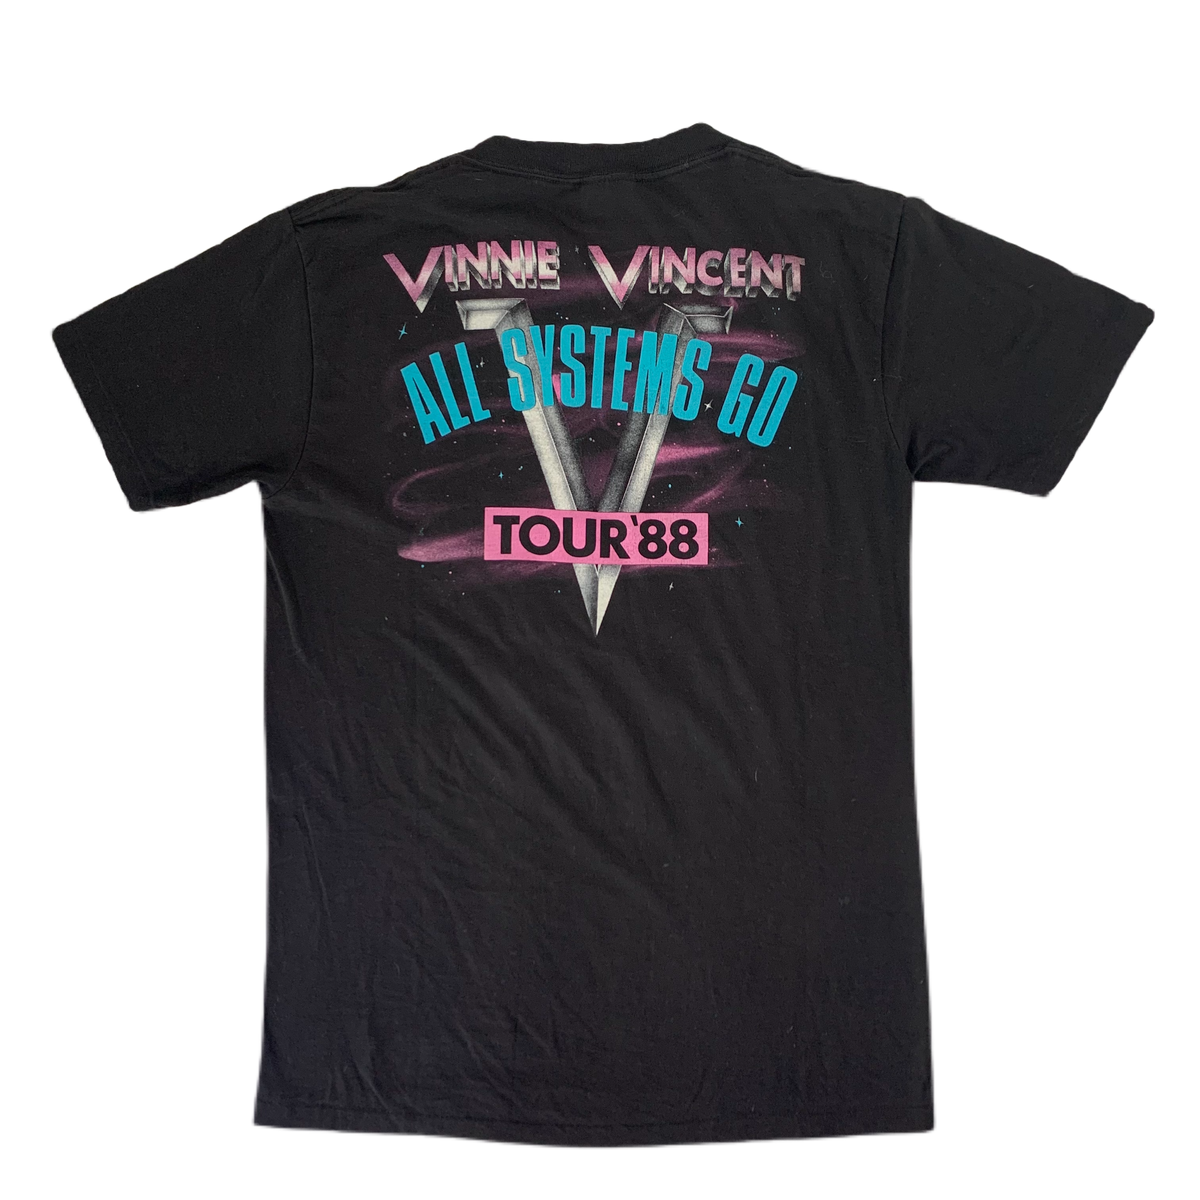 Vintage Vinnie Vincent &quot;All Systems Go&quot; T-Shirt